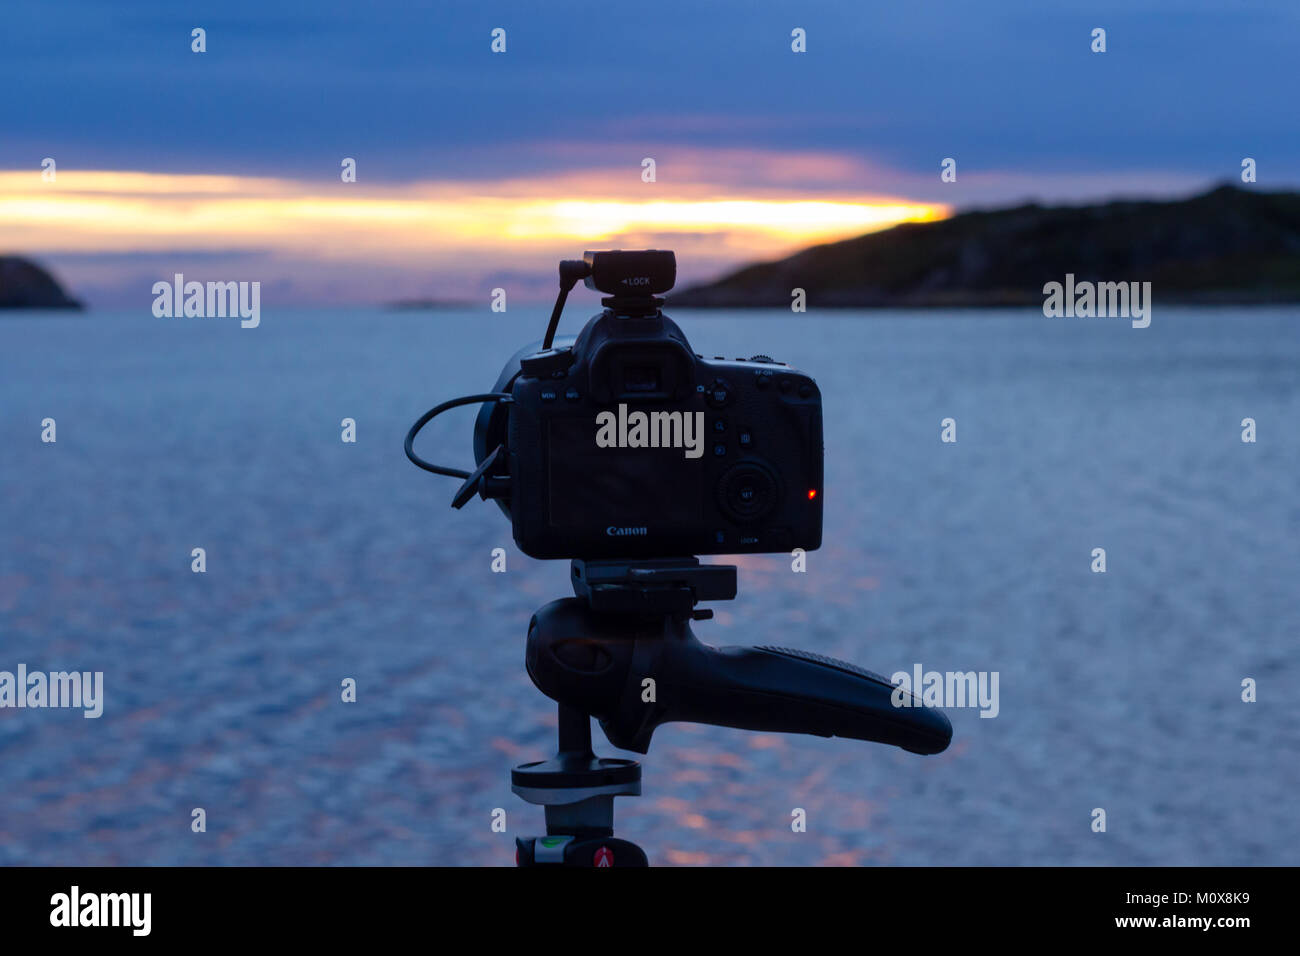 Canon 6D appareil photo sur un trépied Manfrotto avec une Hahnel Giga T Pro II pendant le coucher du soleil à distance Banque D'Images